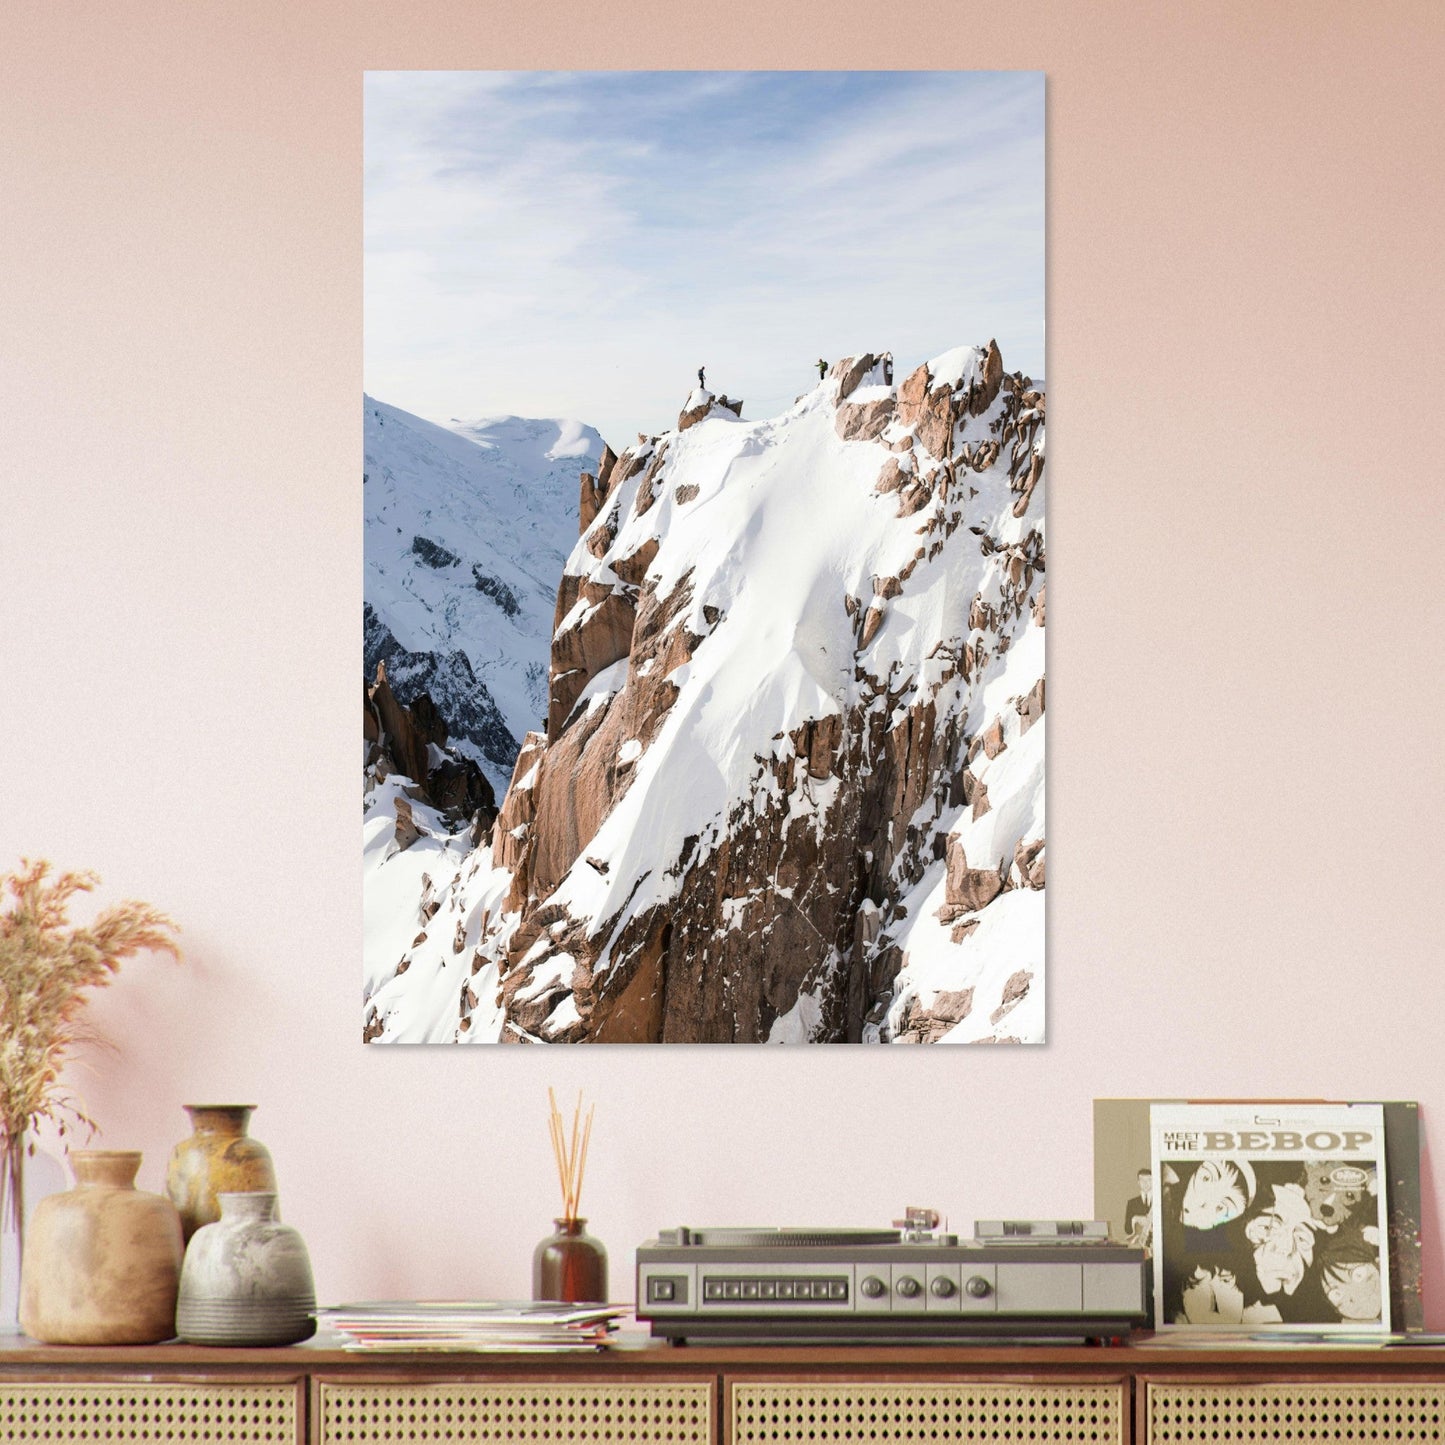 Vente Photo de l'Aiguille du Midi, Arête des Cosmiques, Chamonix - Tableau photo alu montagne